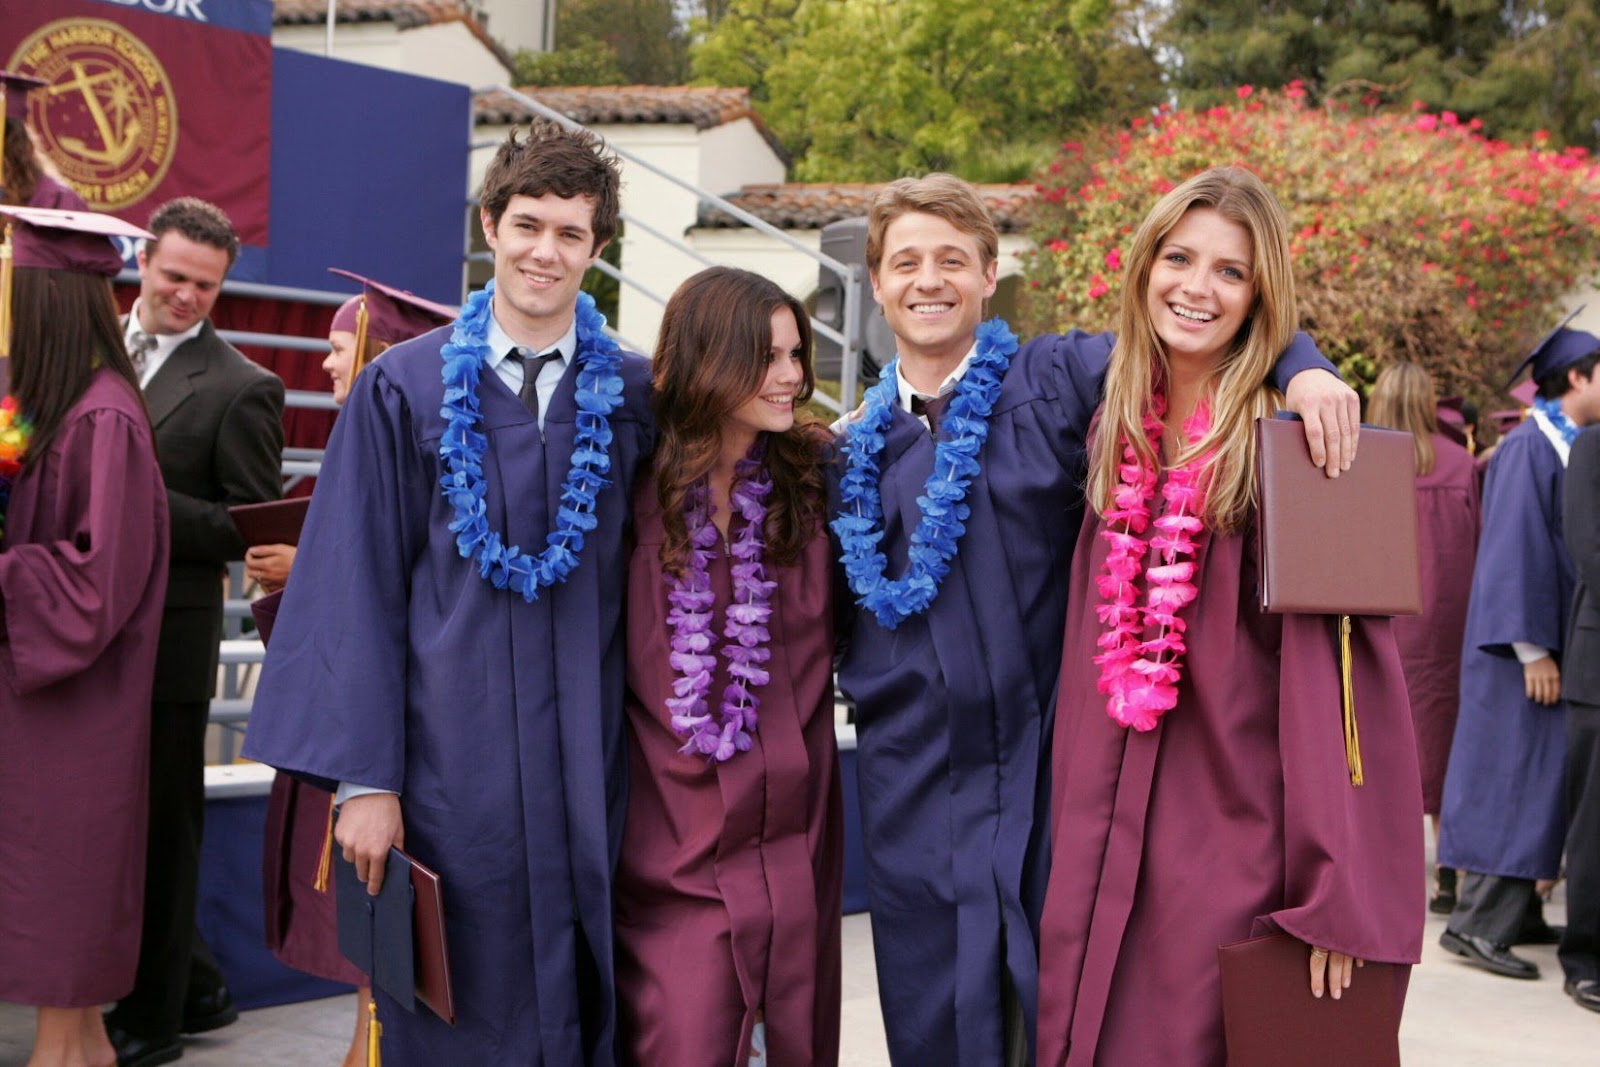 Seth, Ryan, Marissa y Summer posan para la cámara tras su graduación de la Harbor School. Los hombres visten togas azules con collares de flores a juego, mientras que las mujeres llevan togas burdeo con flores rosadas y moradas.